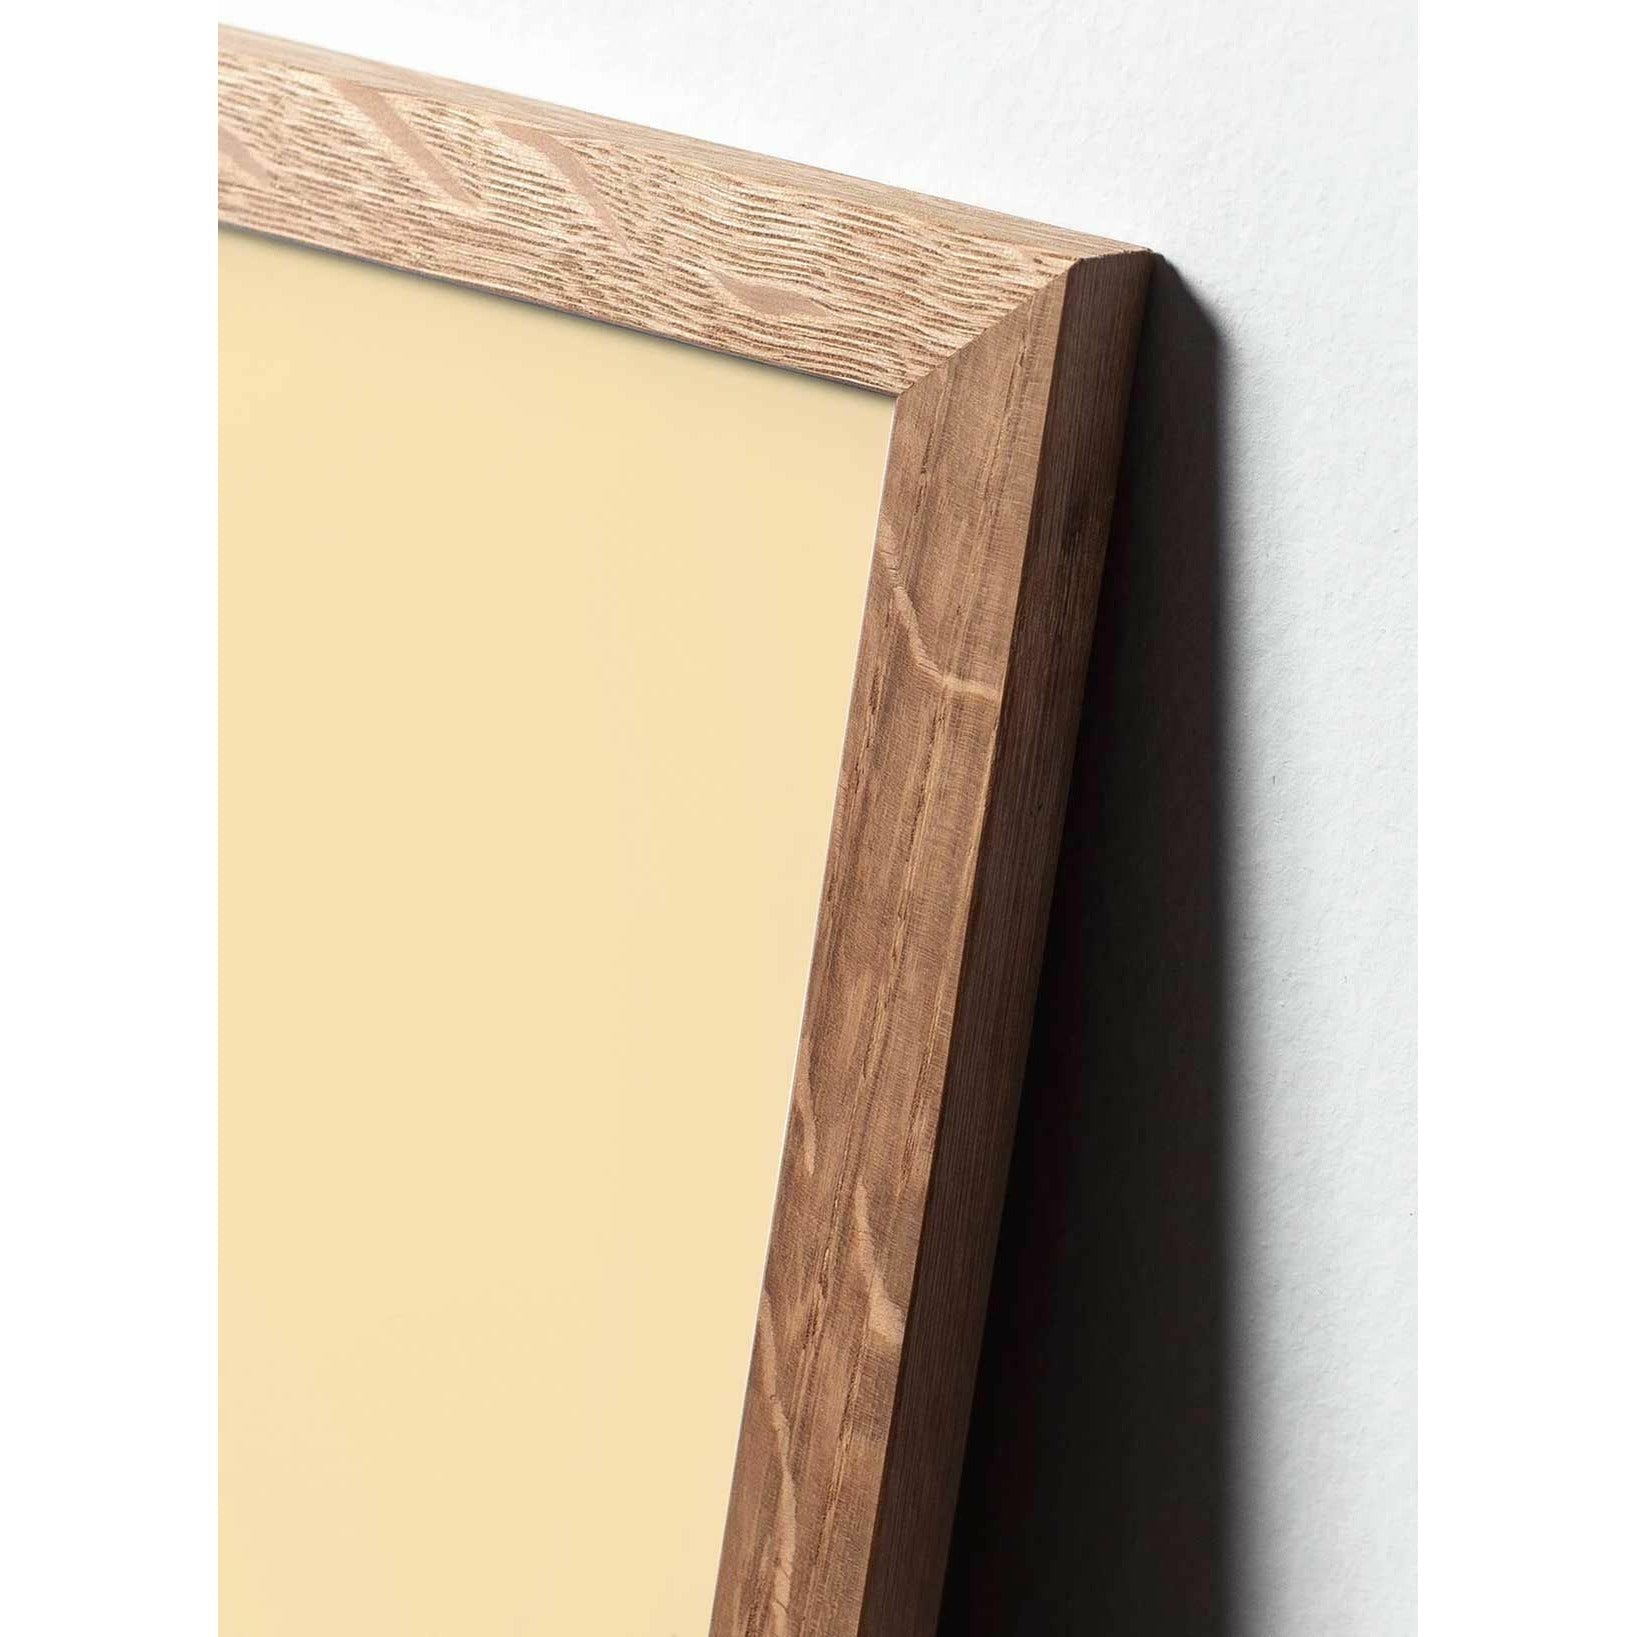 Póster clásico de cono de pino de creación, marco hecho de madera clara de 70x100 cm, fondo azul oscuro